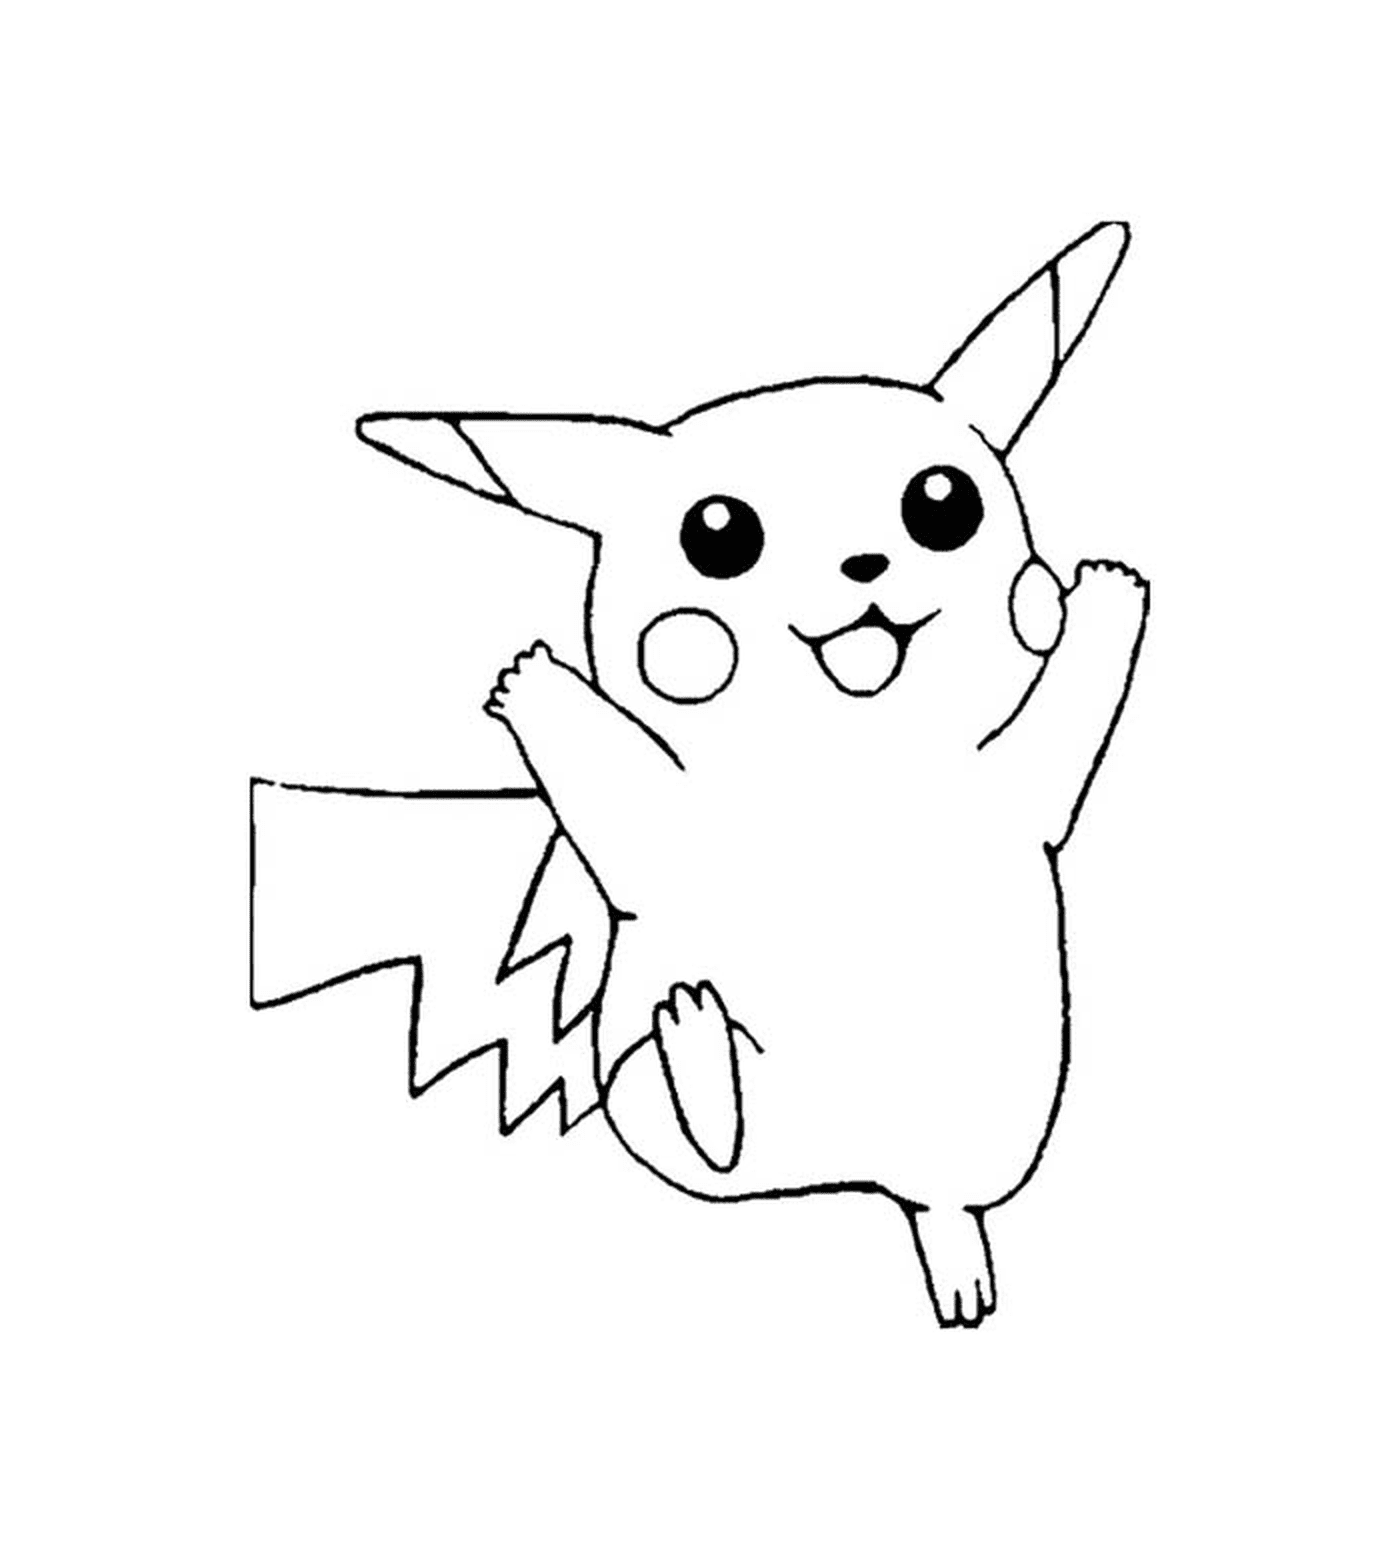  Pikachu, cute and electric 